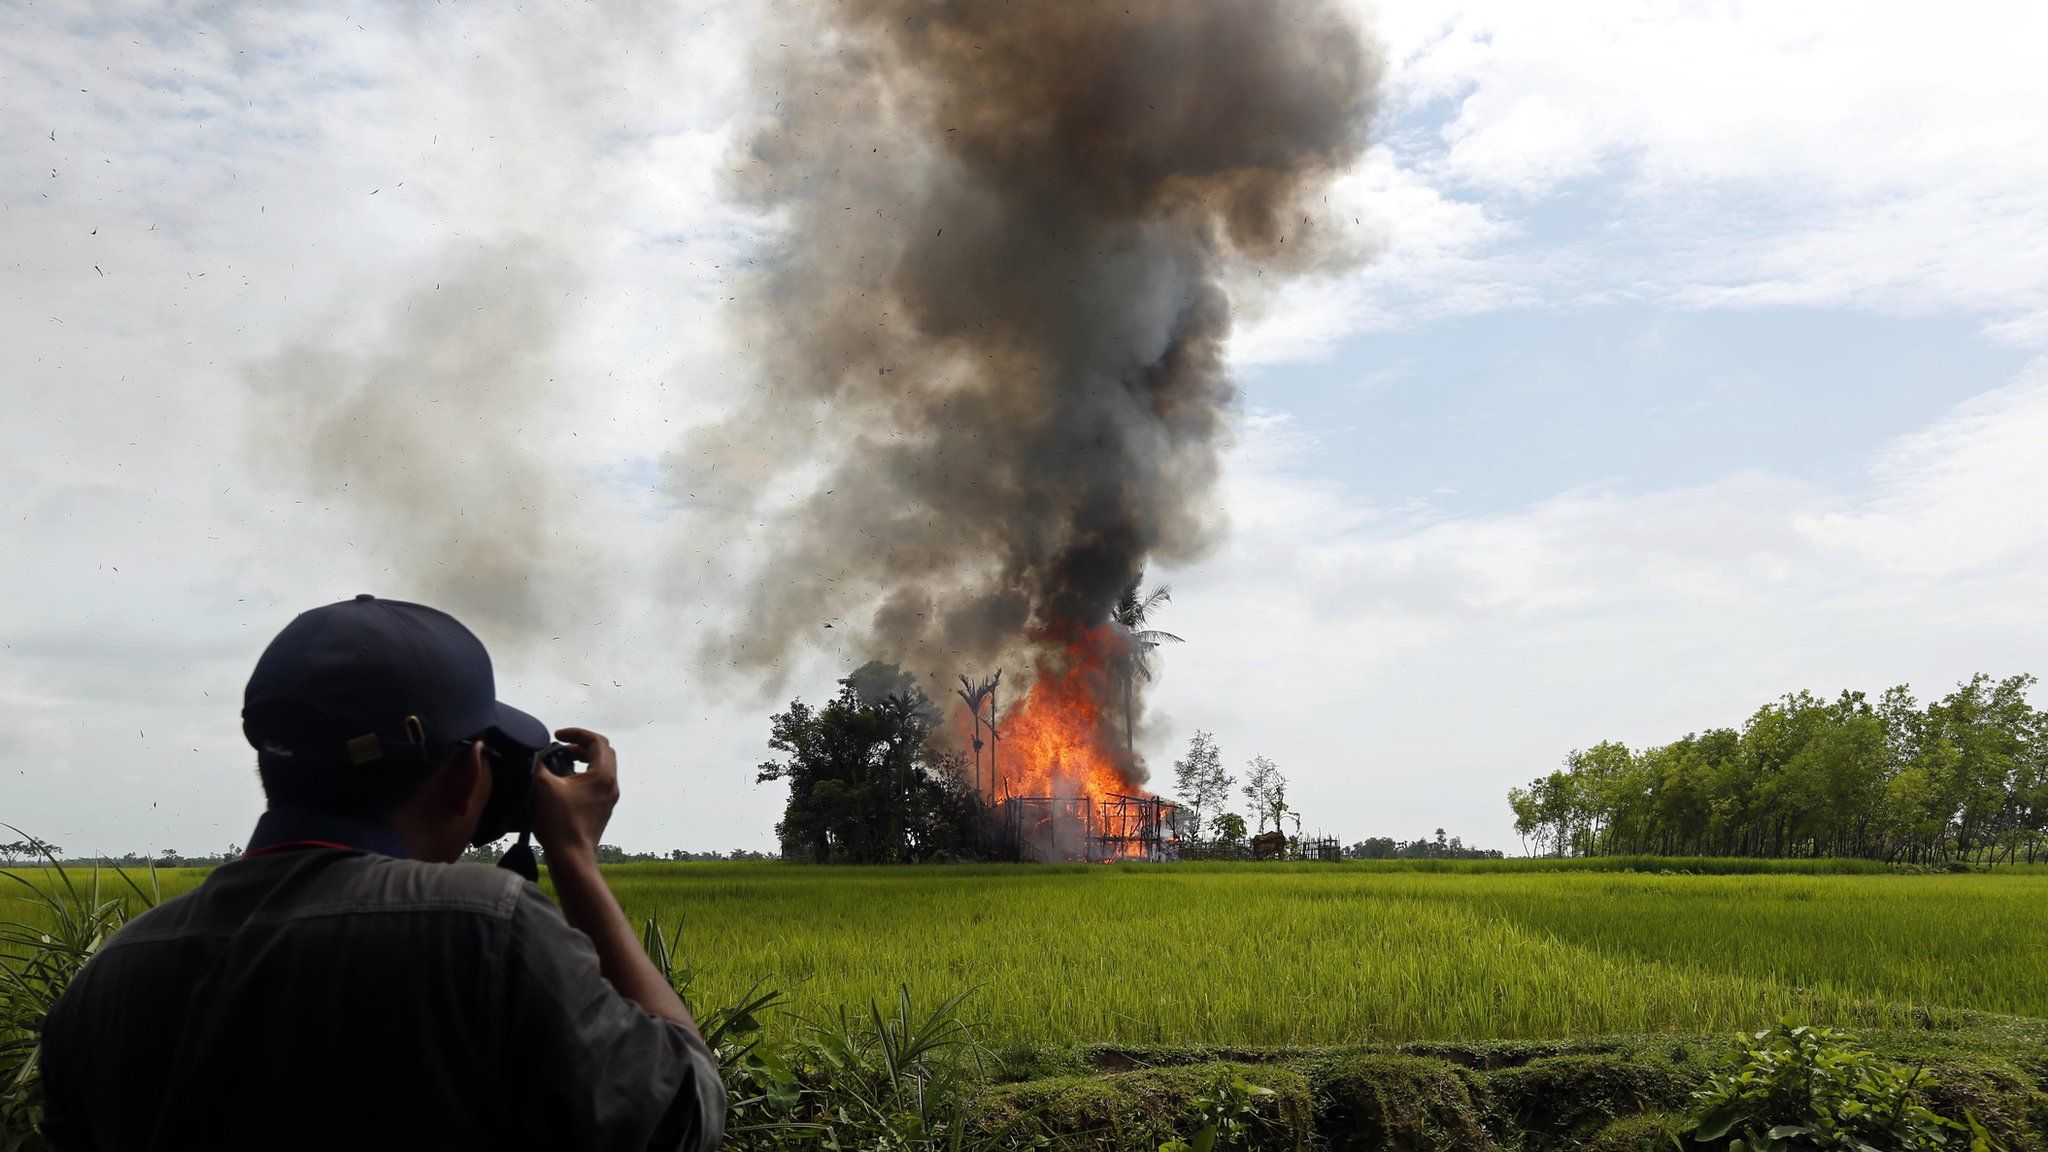 Journalist take photos of a burning house at the Gawdu Zara village in Maungdaw township, Rakhine State, western Myanmar, 7 September 2017